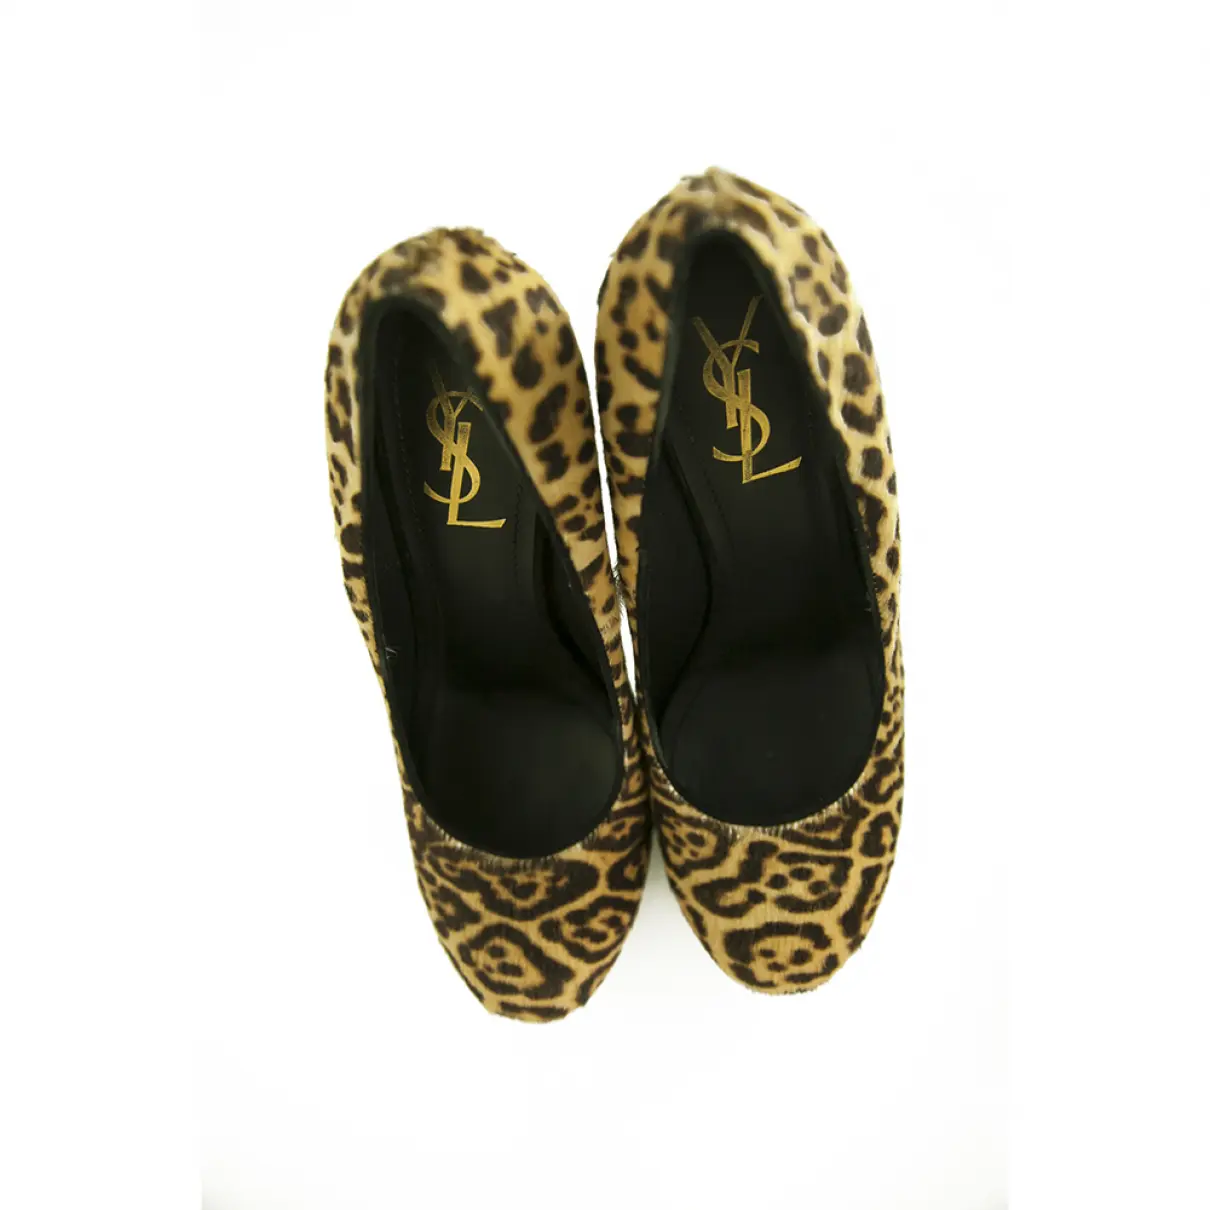 Buy Yves Saint Laurent Trib Too heels online - Vintage